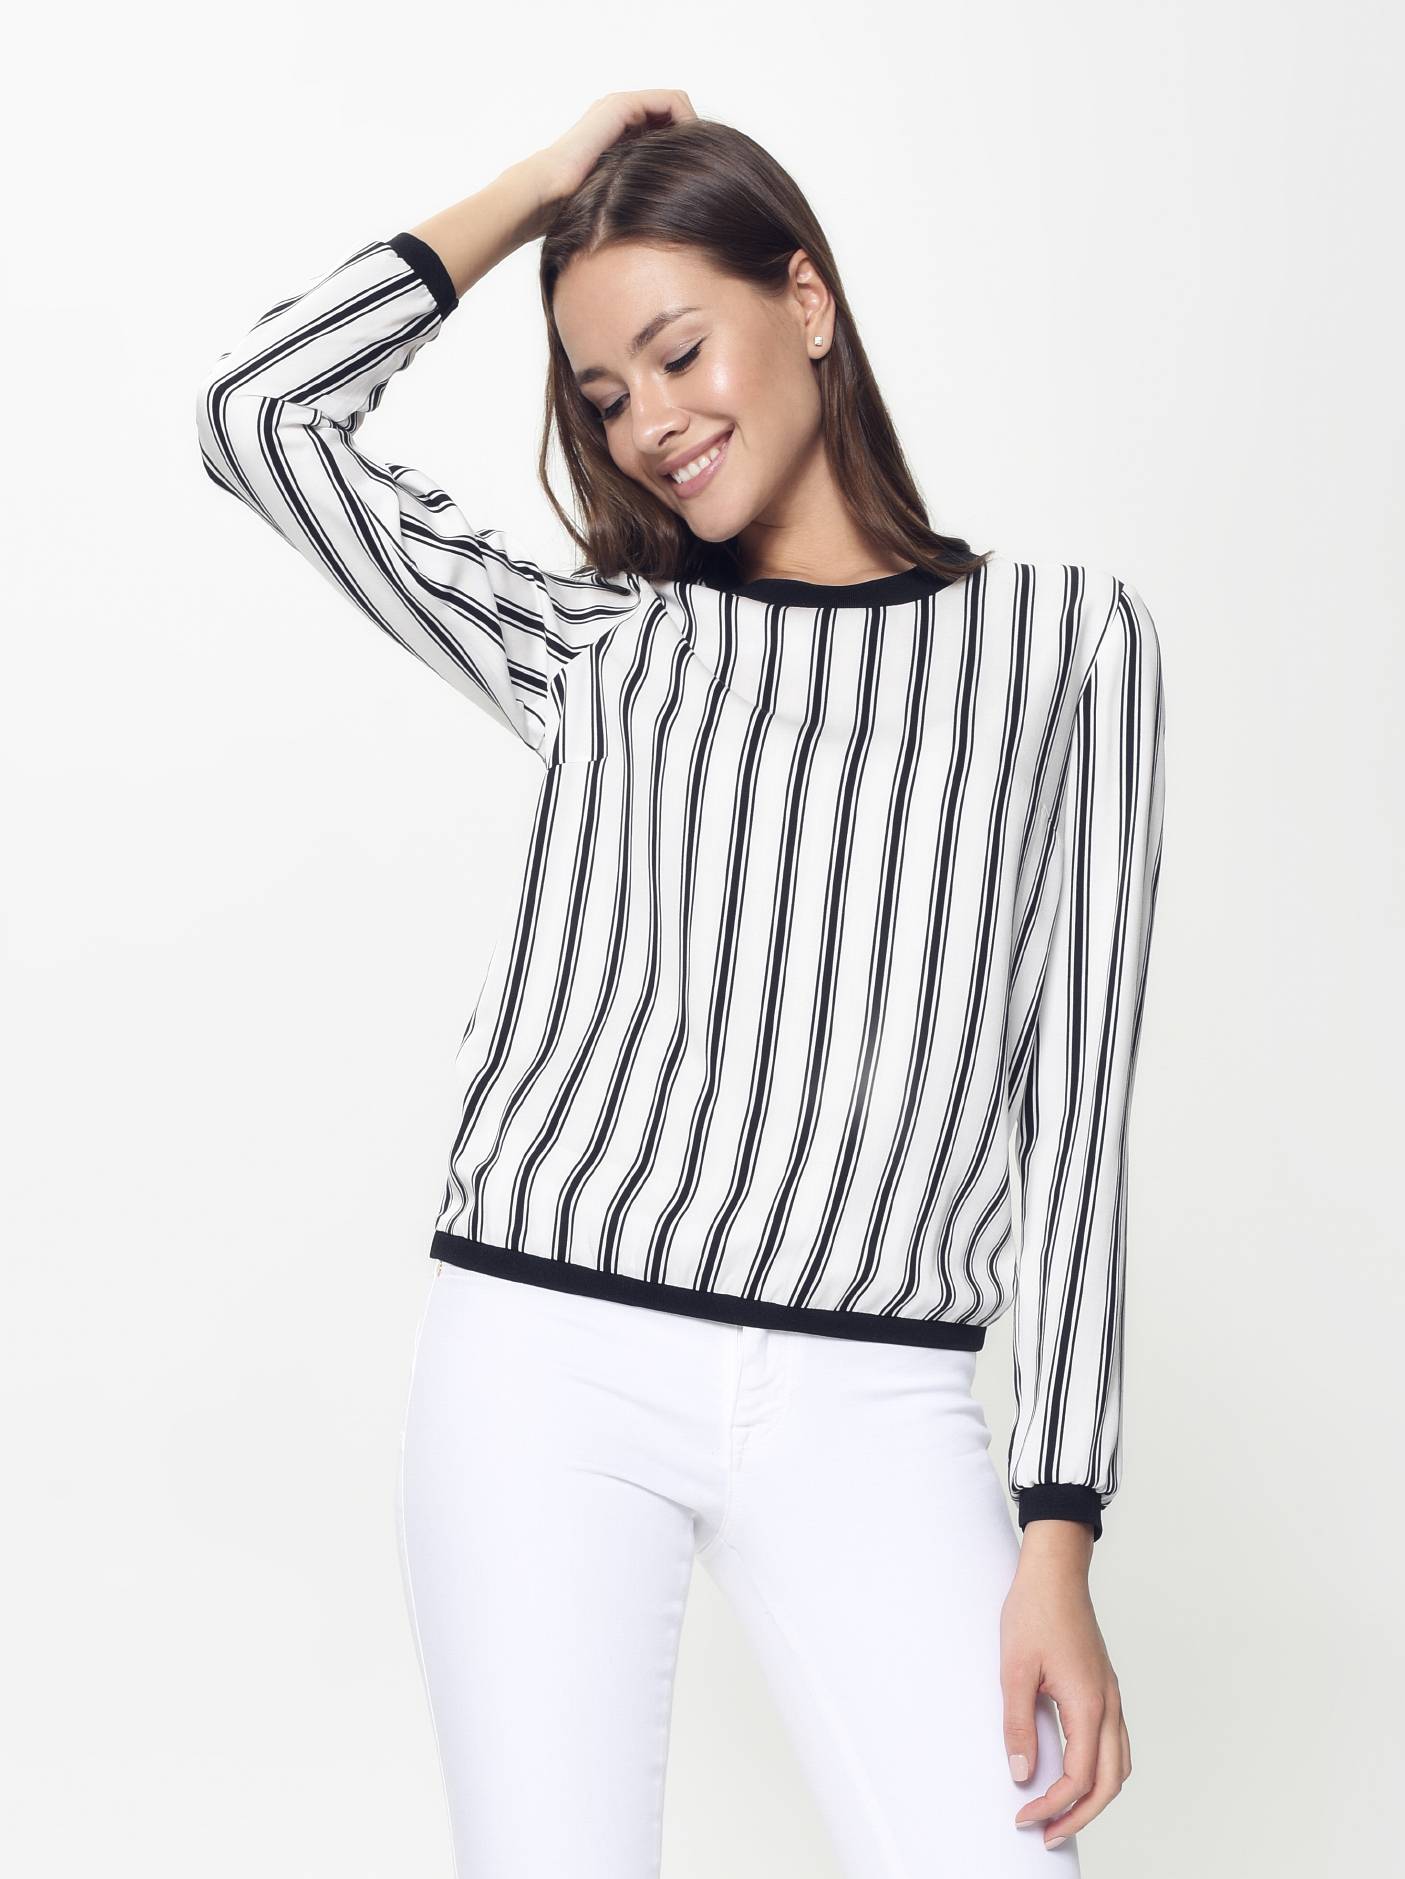 Легкая блузка в полоску LBL 899 Conte ⭐️, цвет black-white stripes, размер 170-100-106 - фото 1